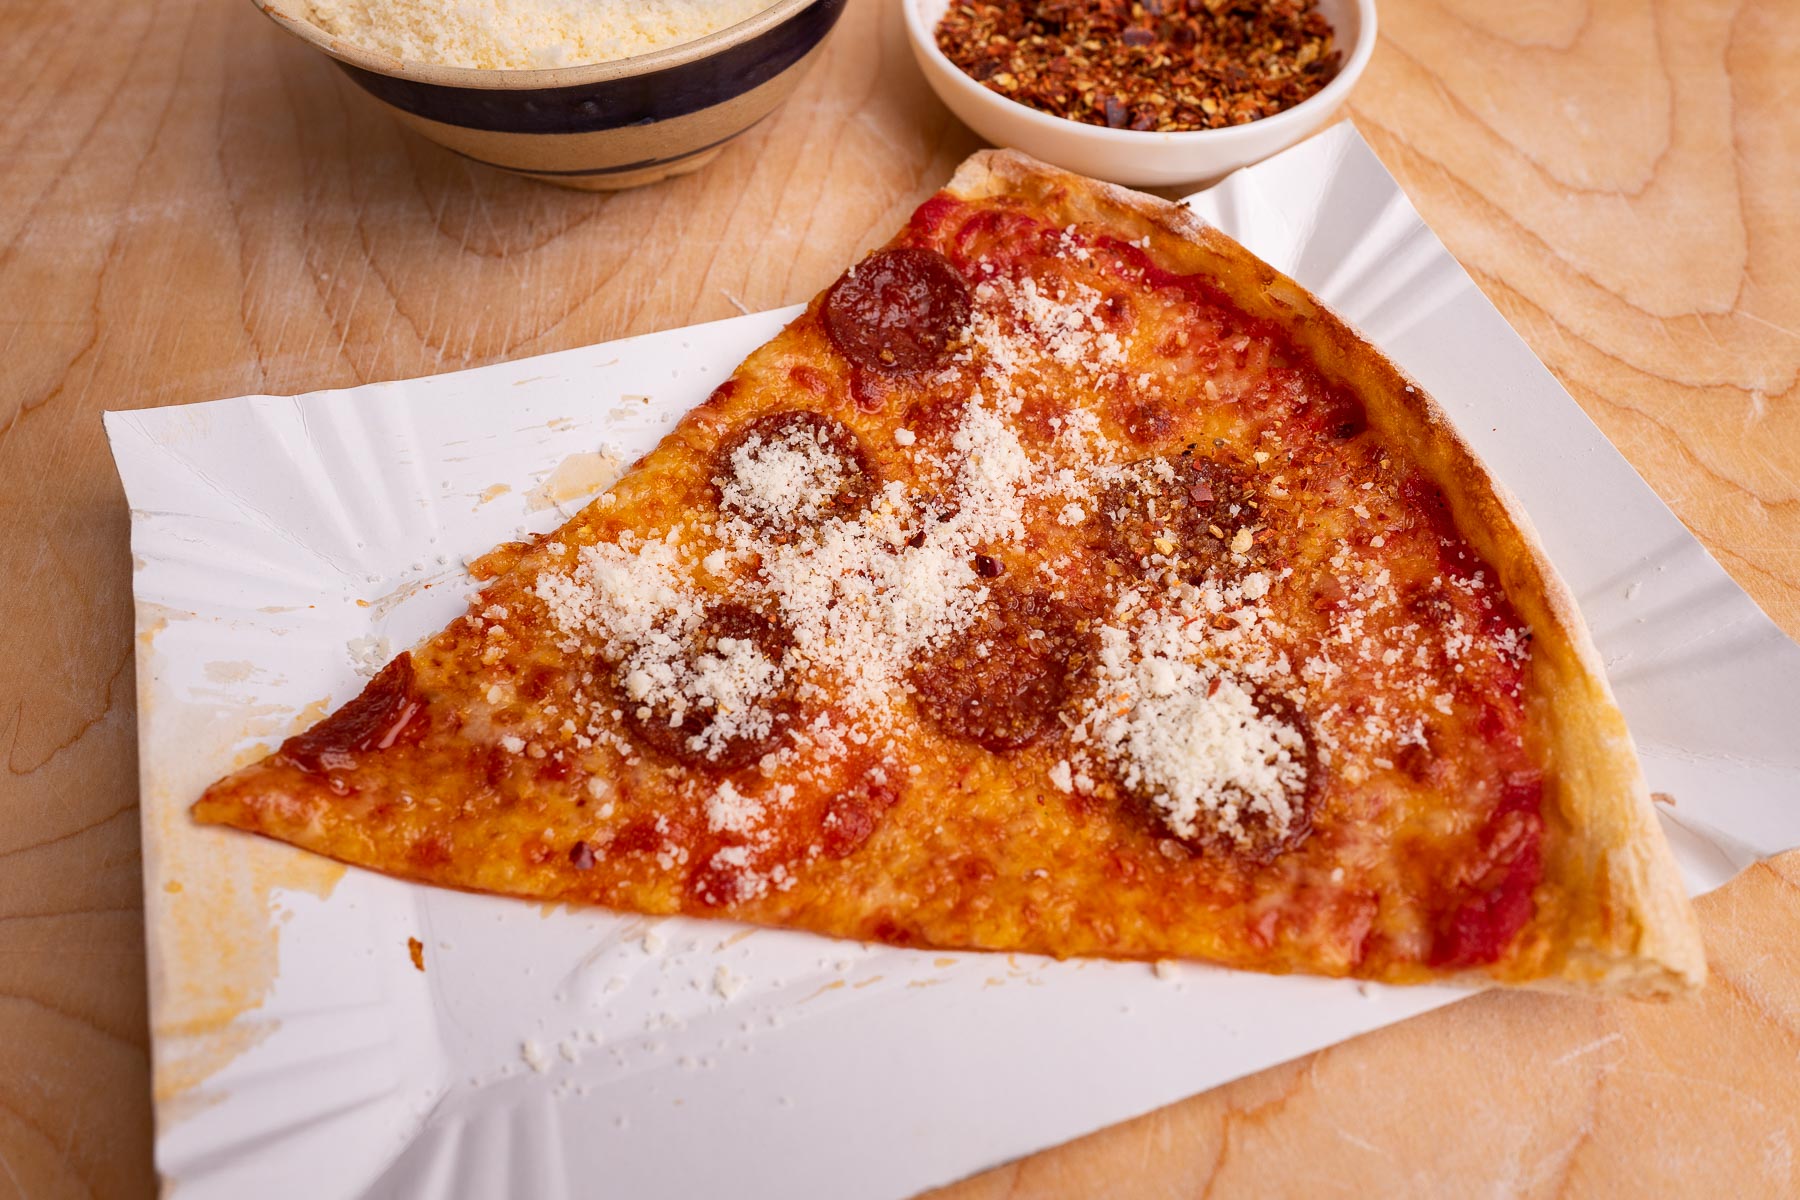 pizzę możemy wedle uznania doprawić dodatkami takimi jak tarty parmezan czy płatki chilli